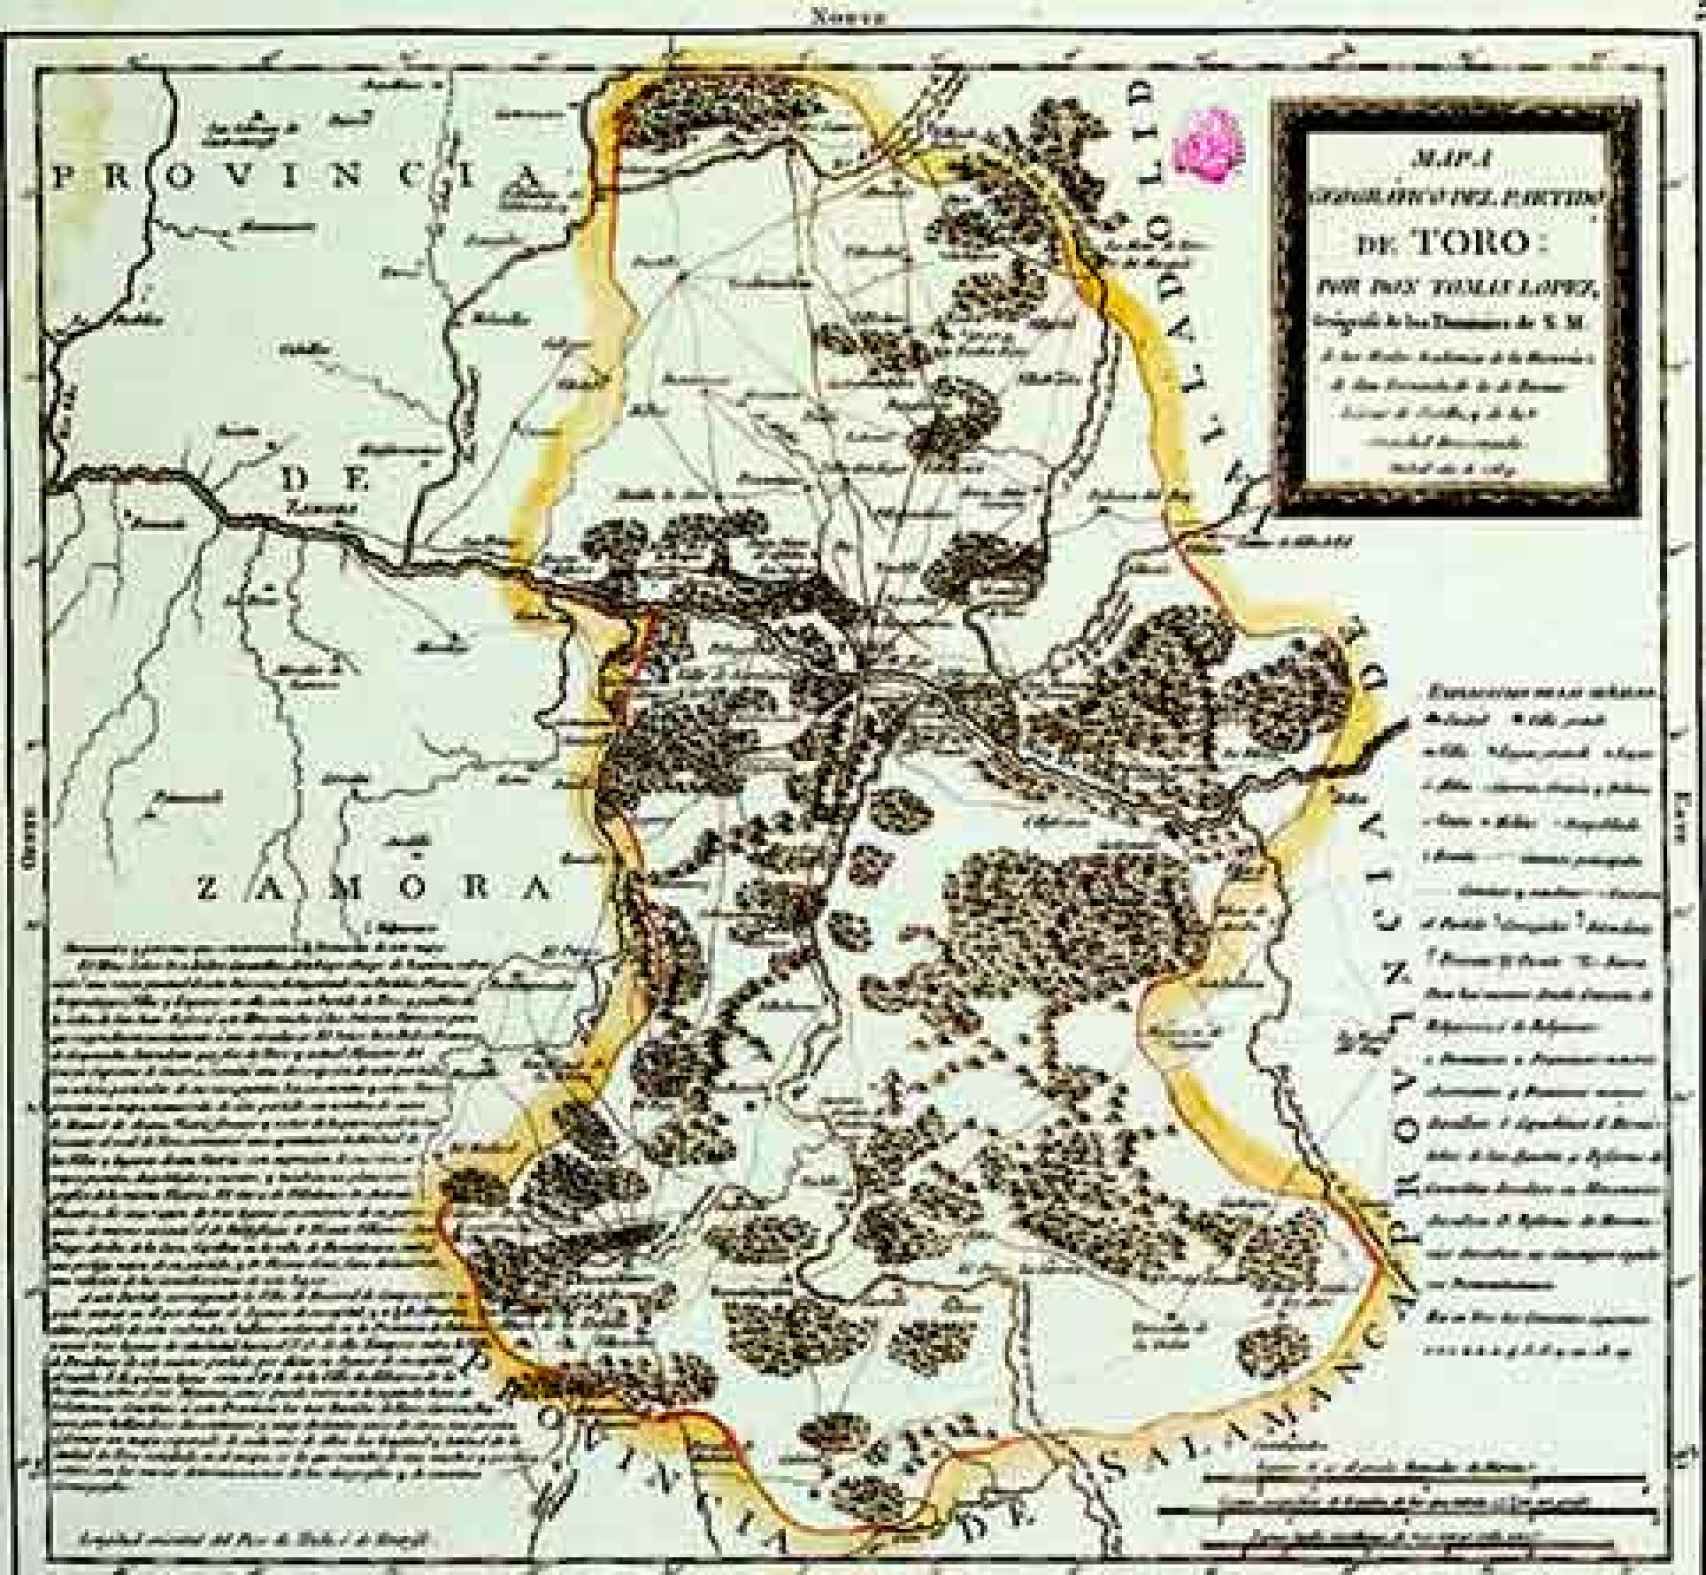 Mapa del Partido de Toro en 1794, de Tomás Lópeza